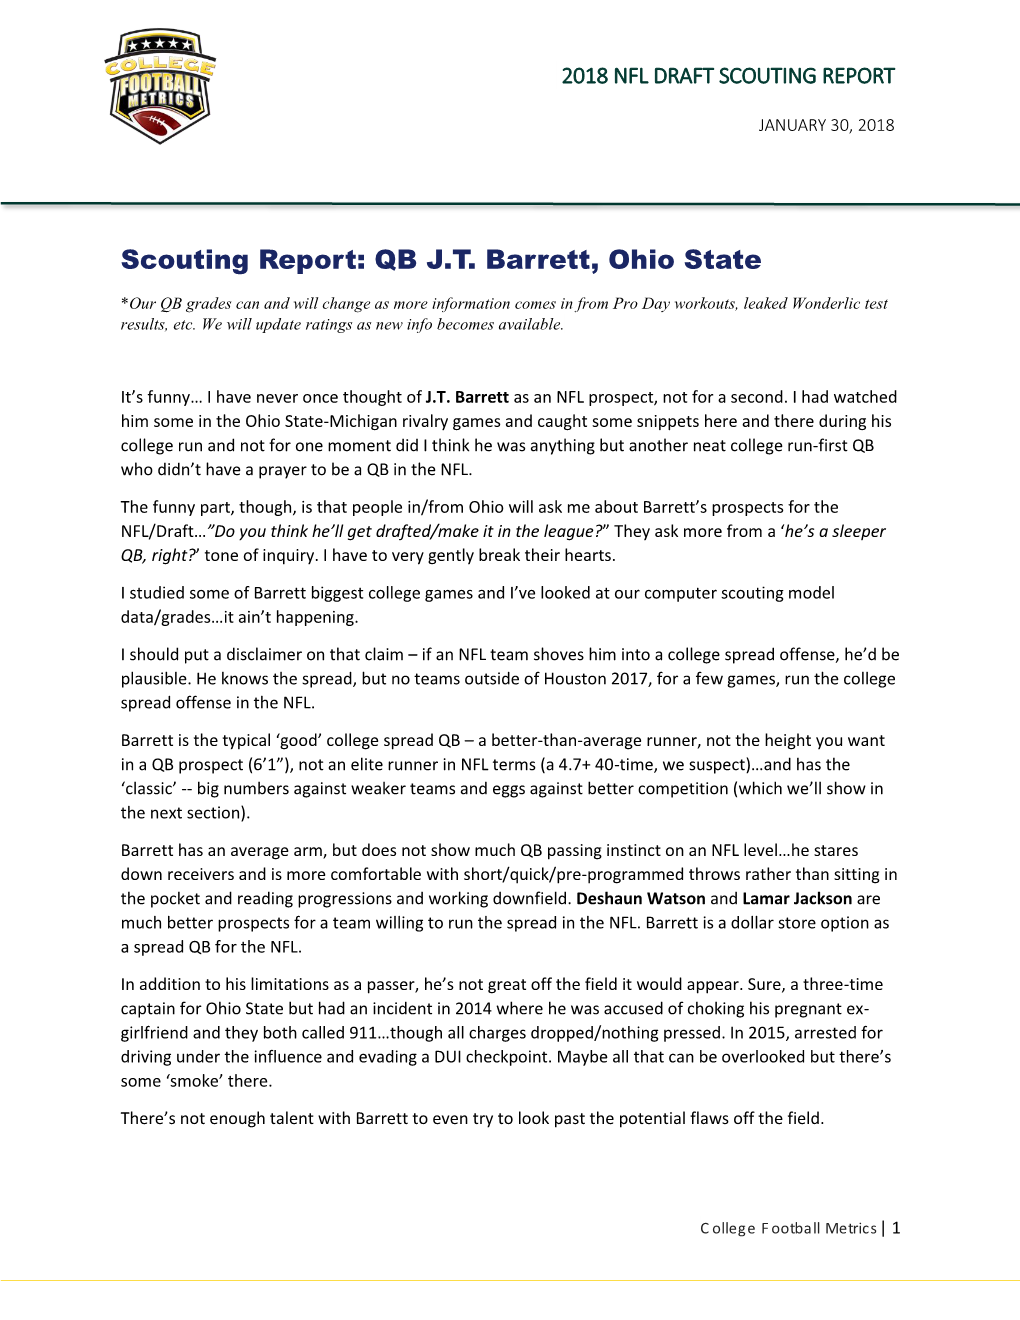 NFL Draft 2018 Scouting Report: QB J.T. Barrett, Ohio State